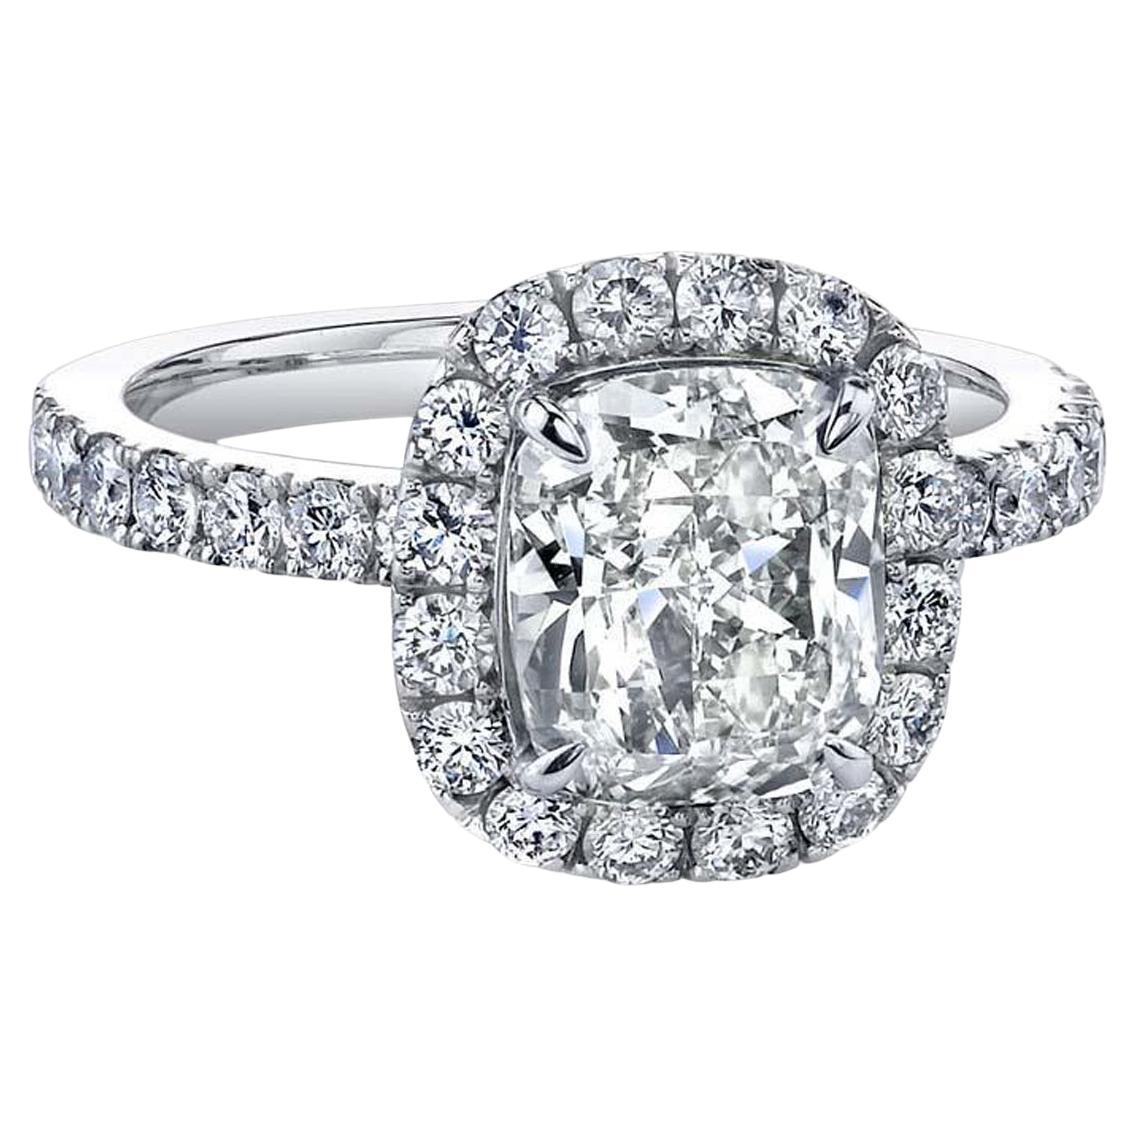 2.70ct GIA Natural Cushion Cut Diamond Platinum Wedding Ring with Pave Diamonds (Anneau de mariage en platine avec diamants pavés)